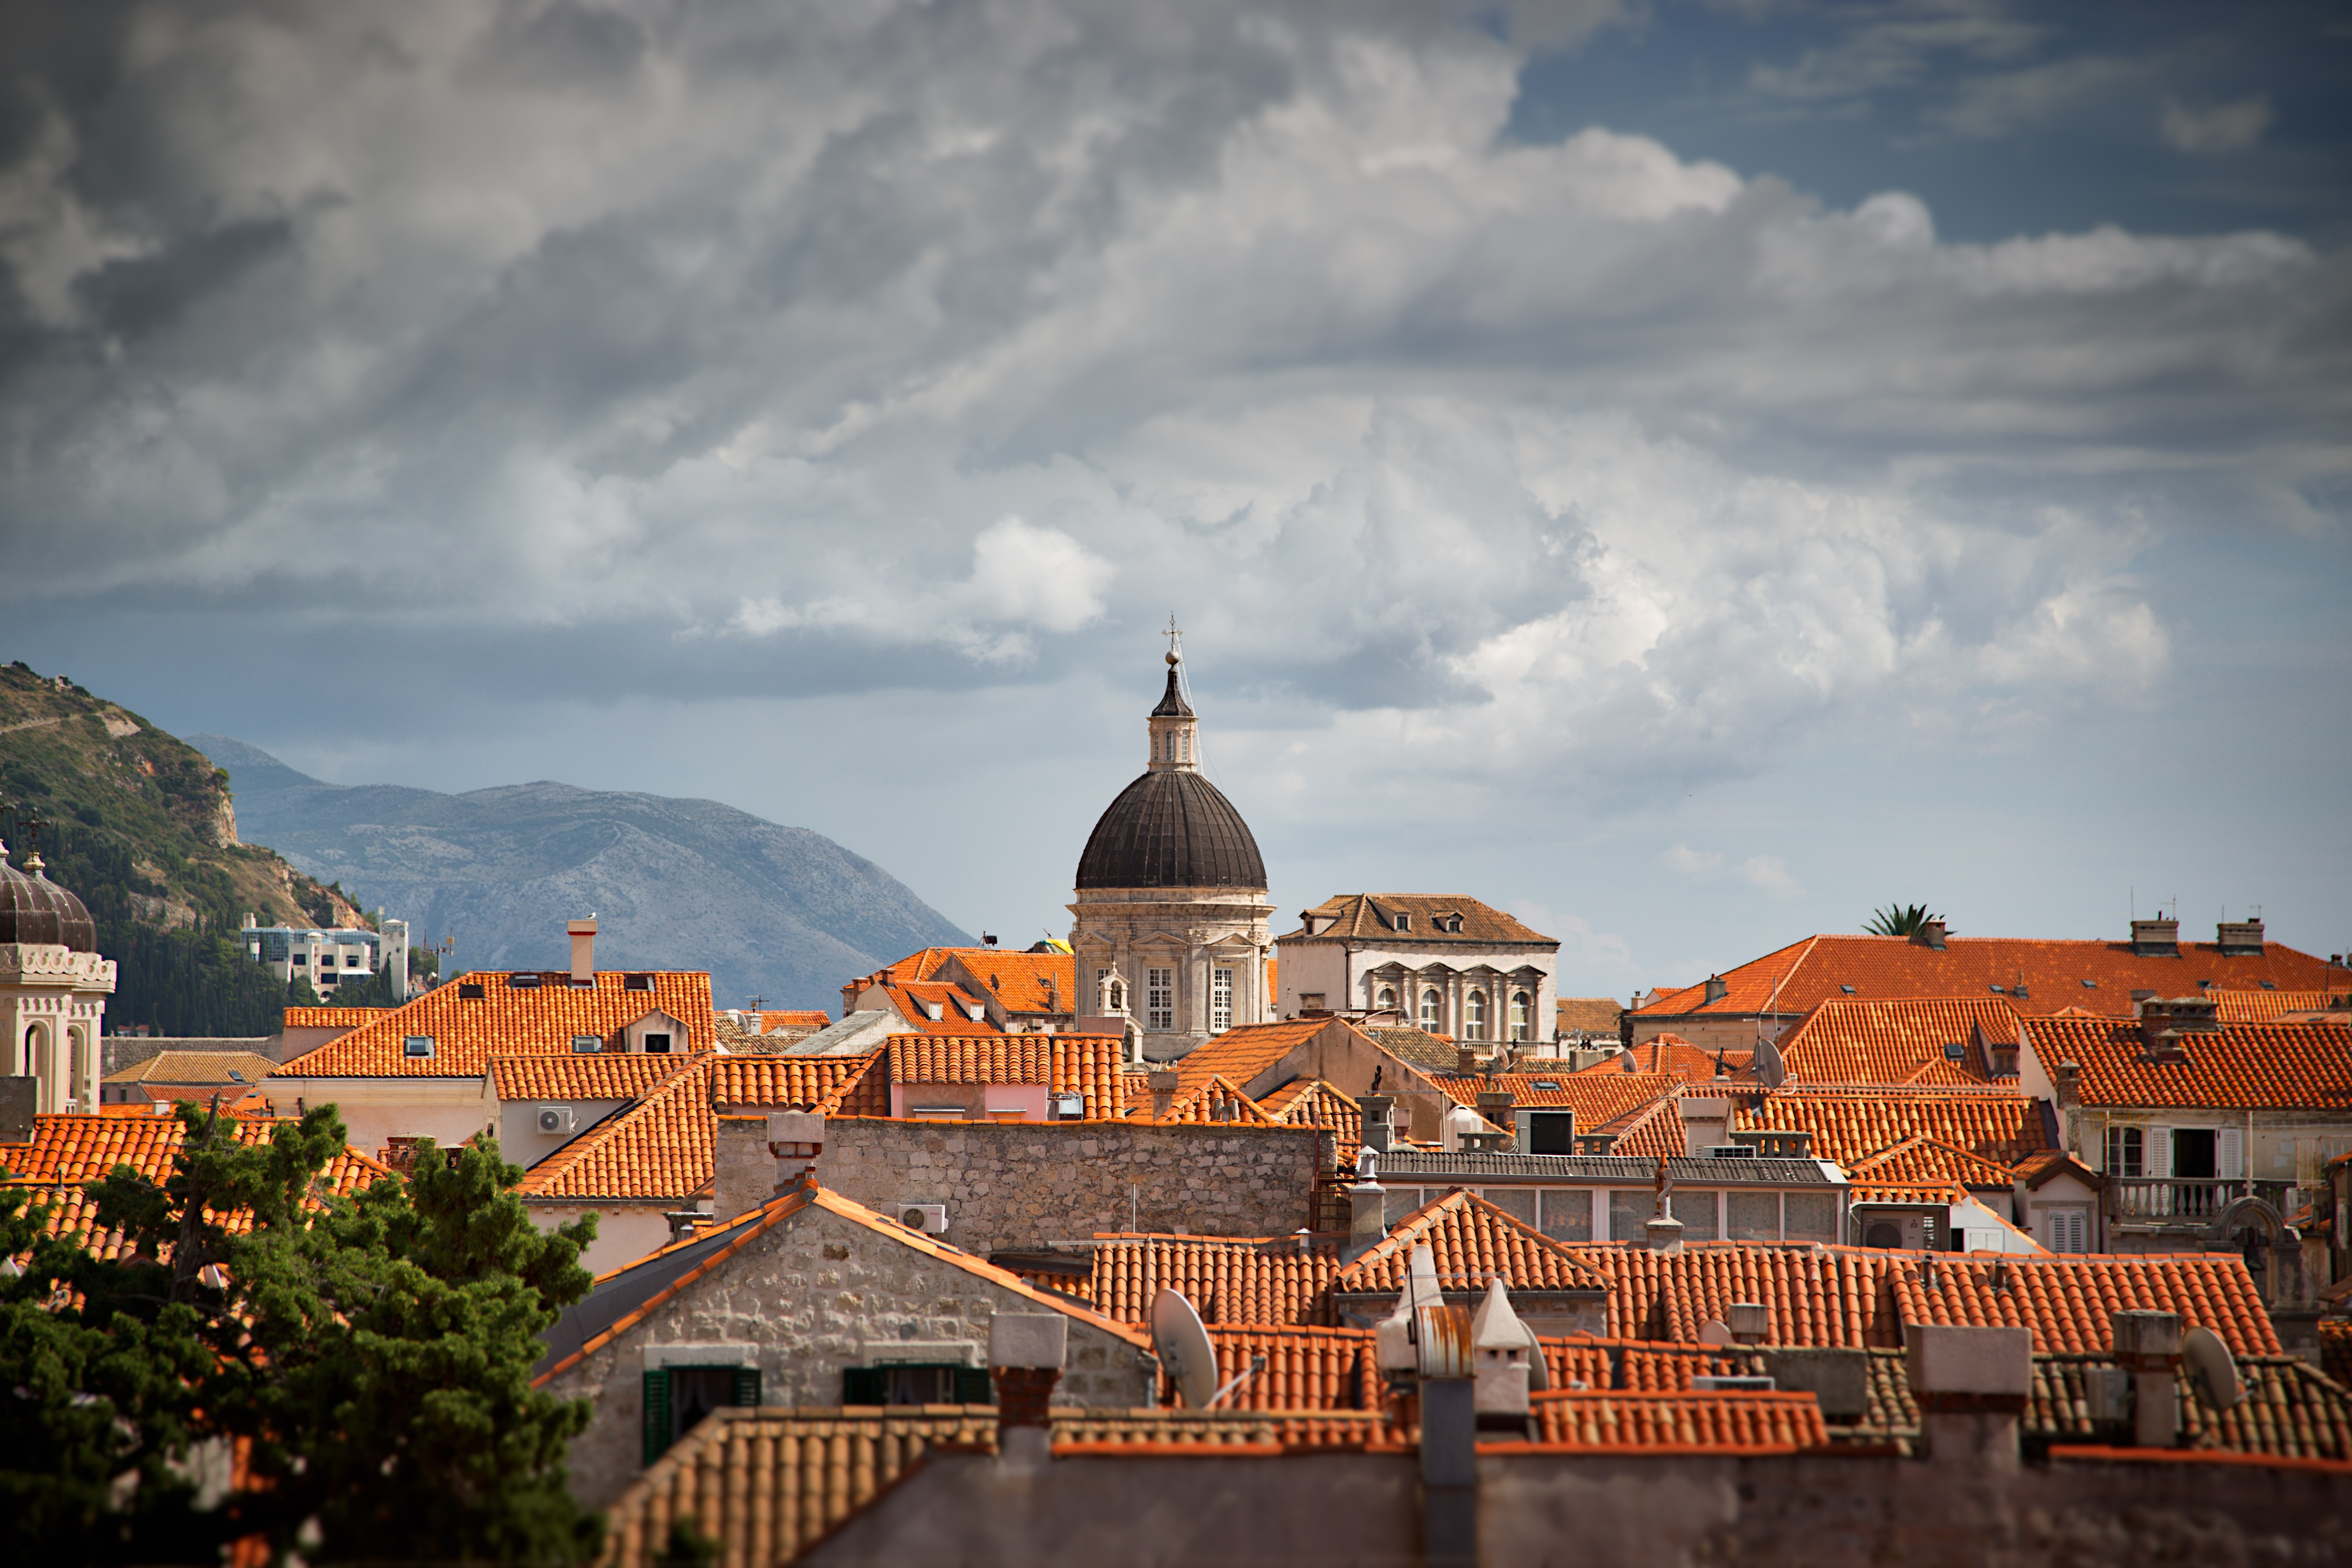 Dächer mit roten Ziegeln in Kroatien